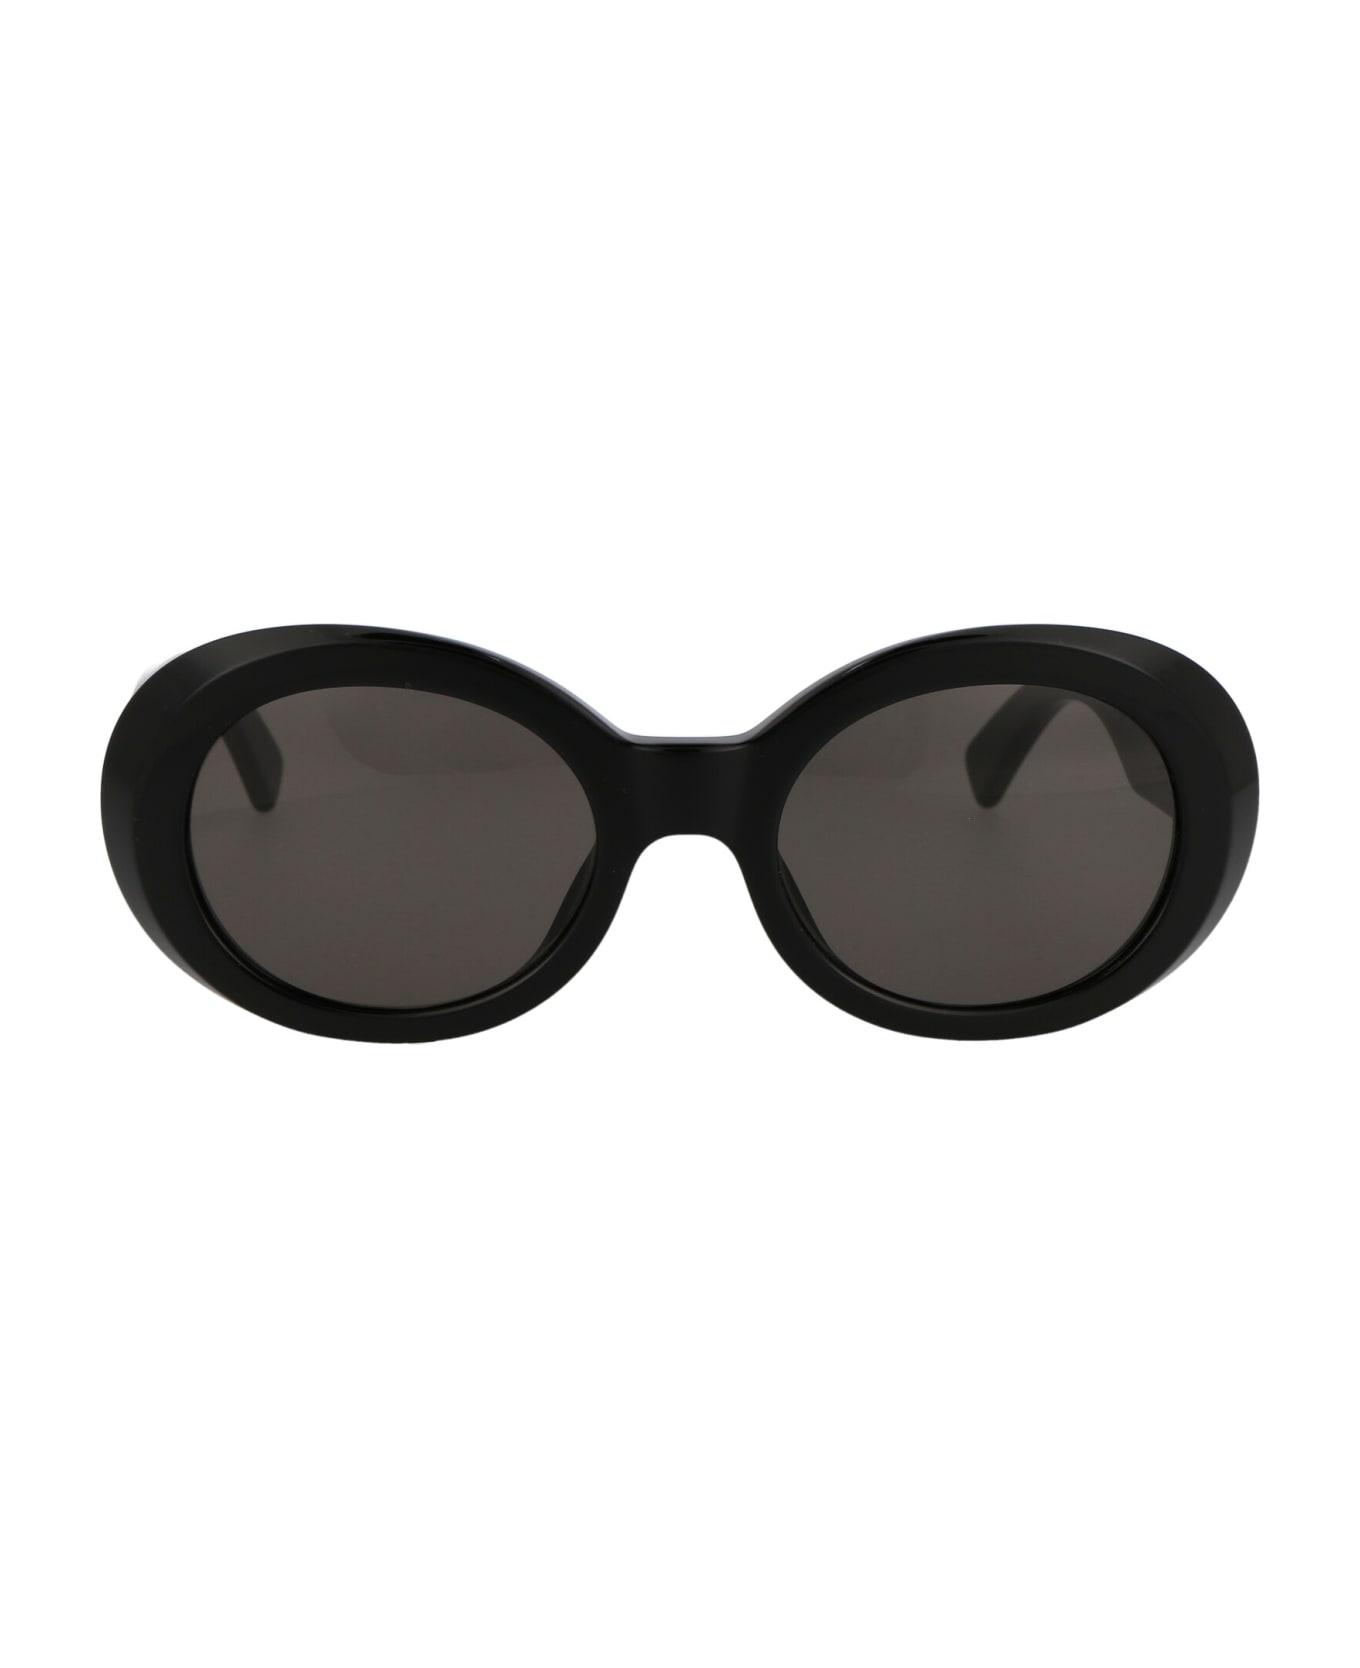 AMBUSH Kurt Sunglasses - 1007 BLACK